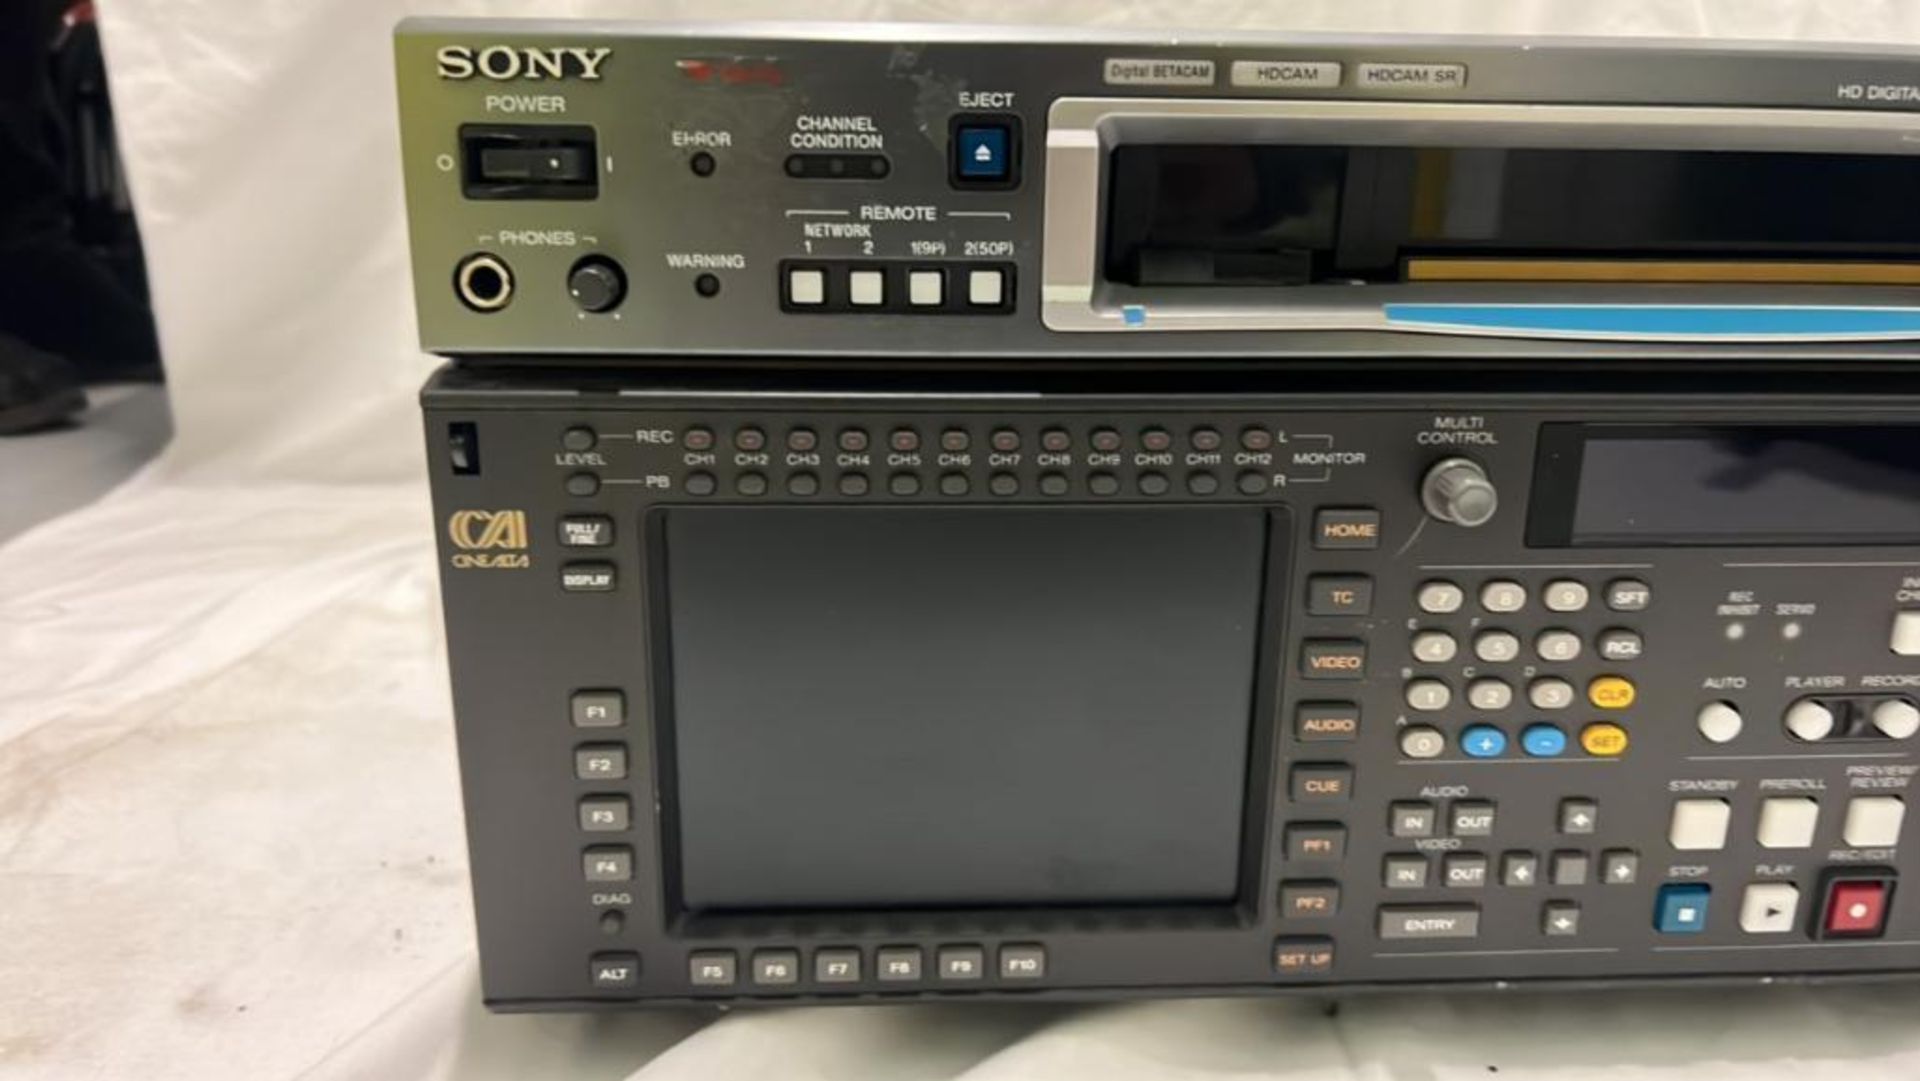 Sony SRW-5800/2 HDCAM Studio Recorder with flight case SN: 12335 - Image 2 of 8